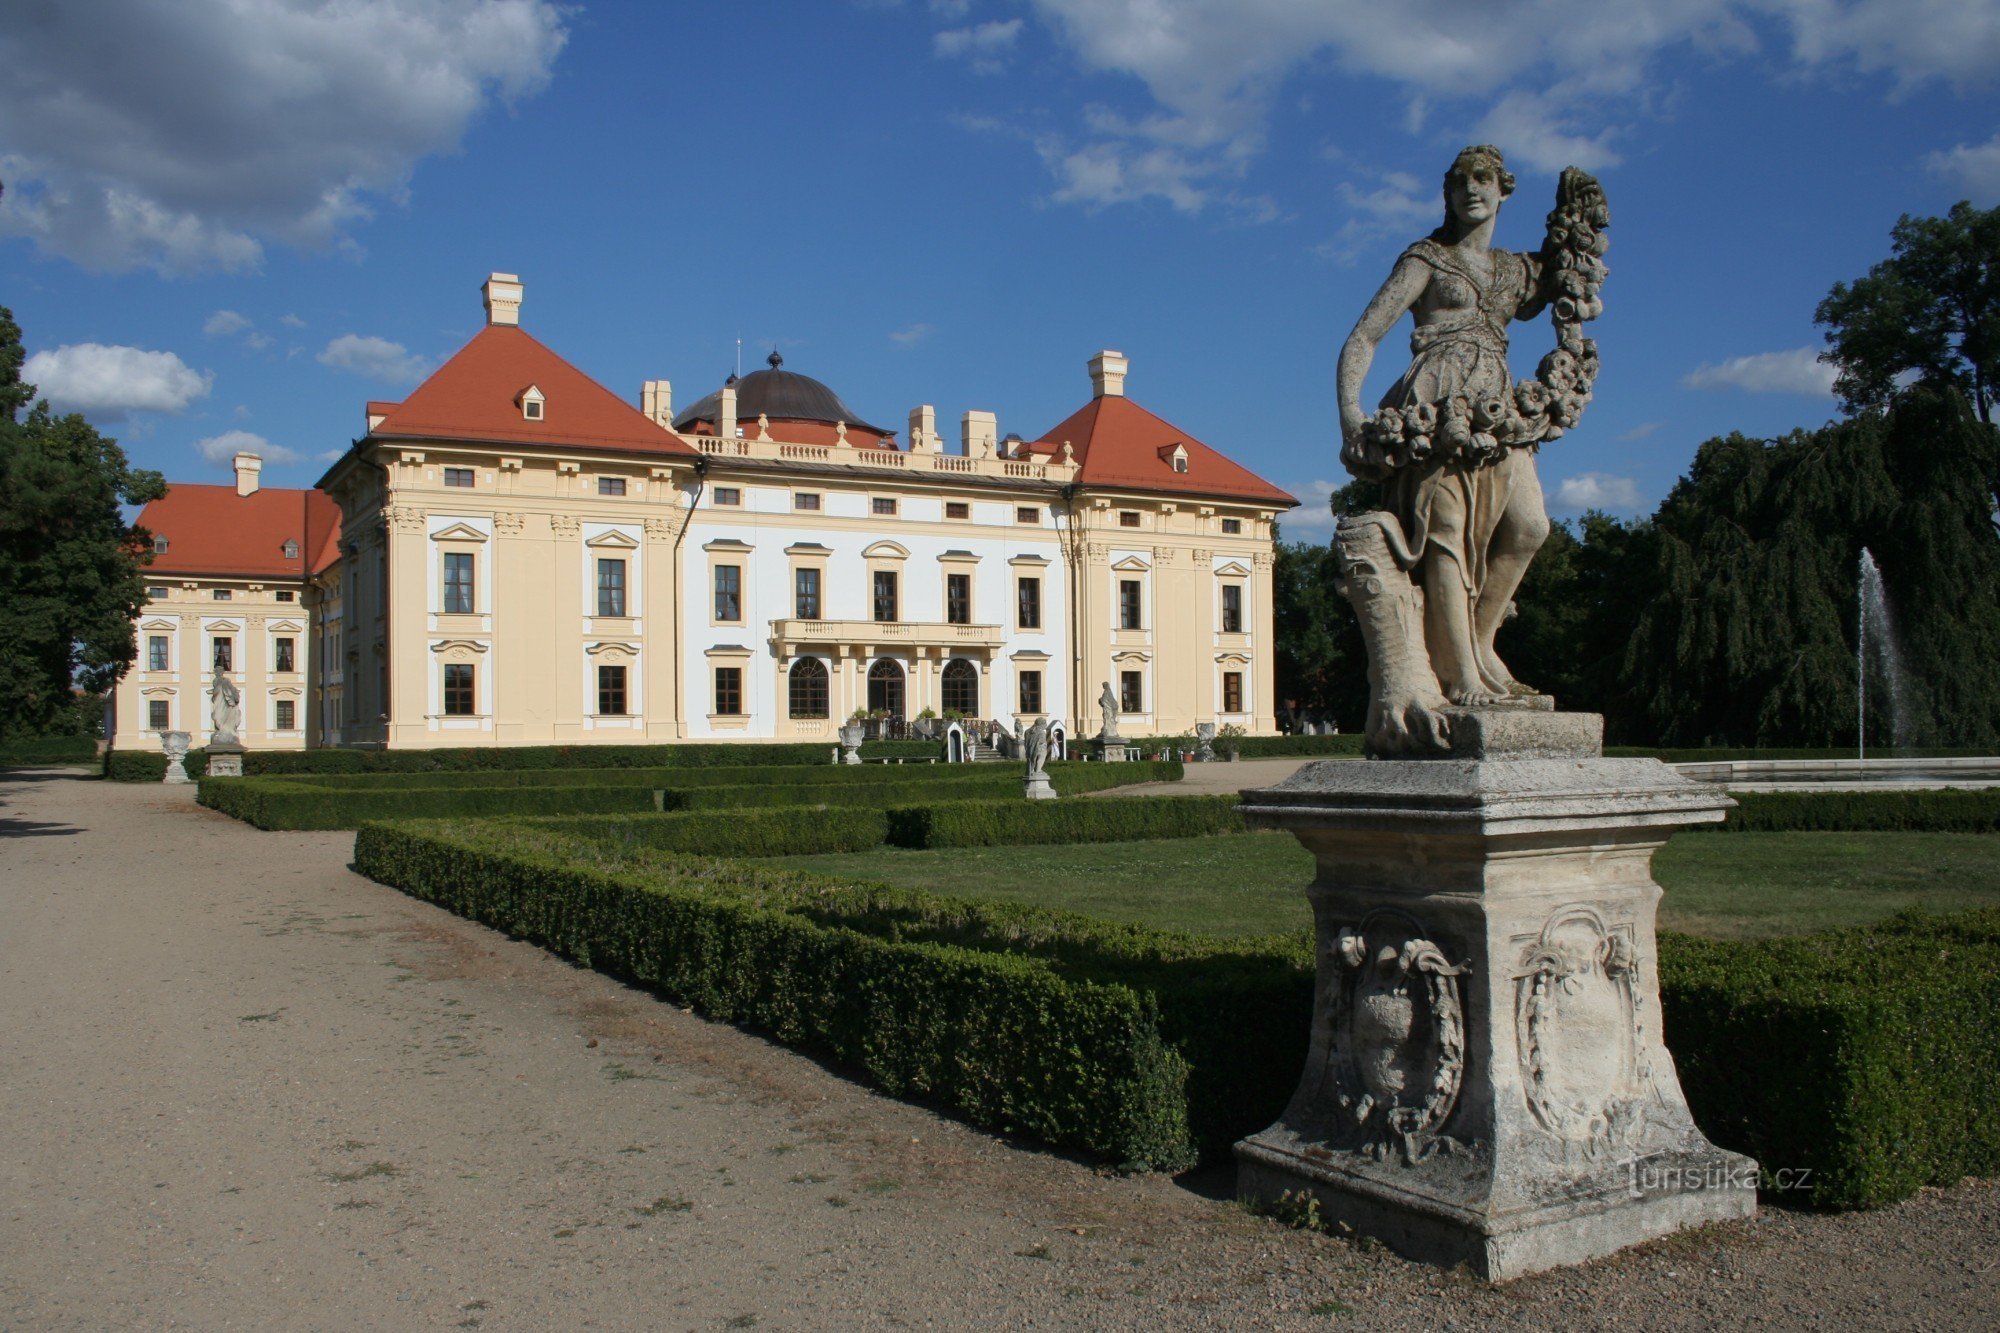 Slott Slavkov nära Brno